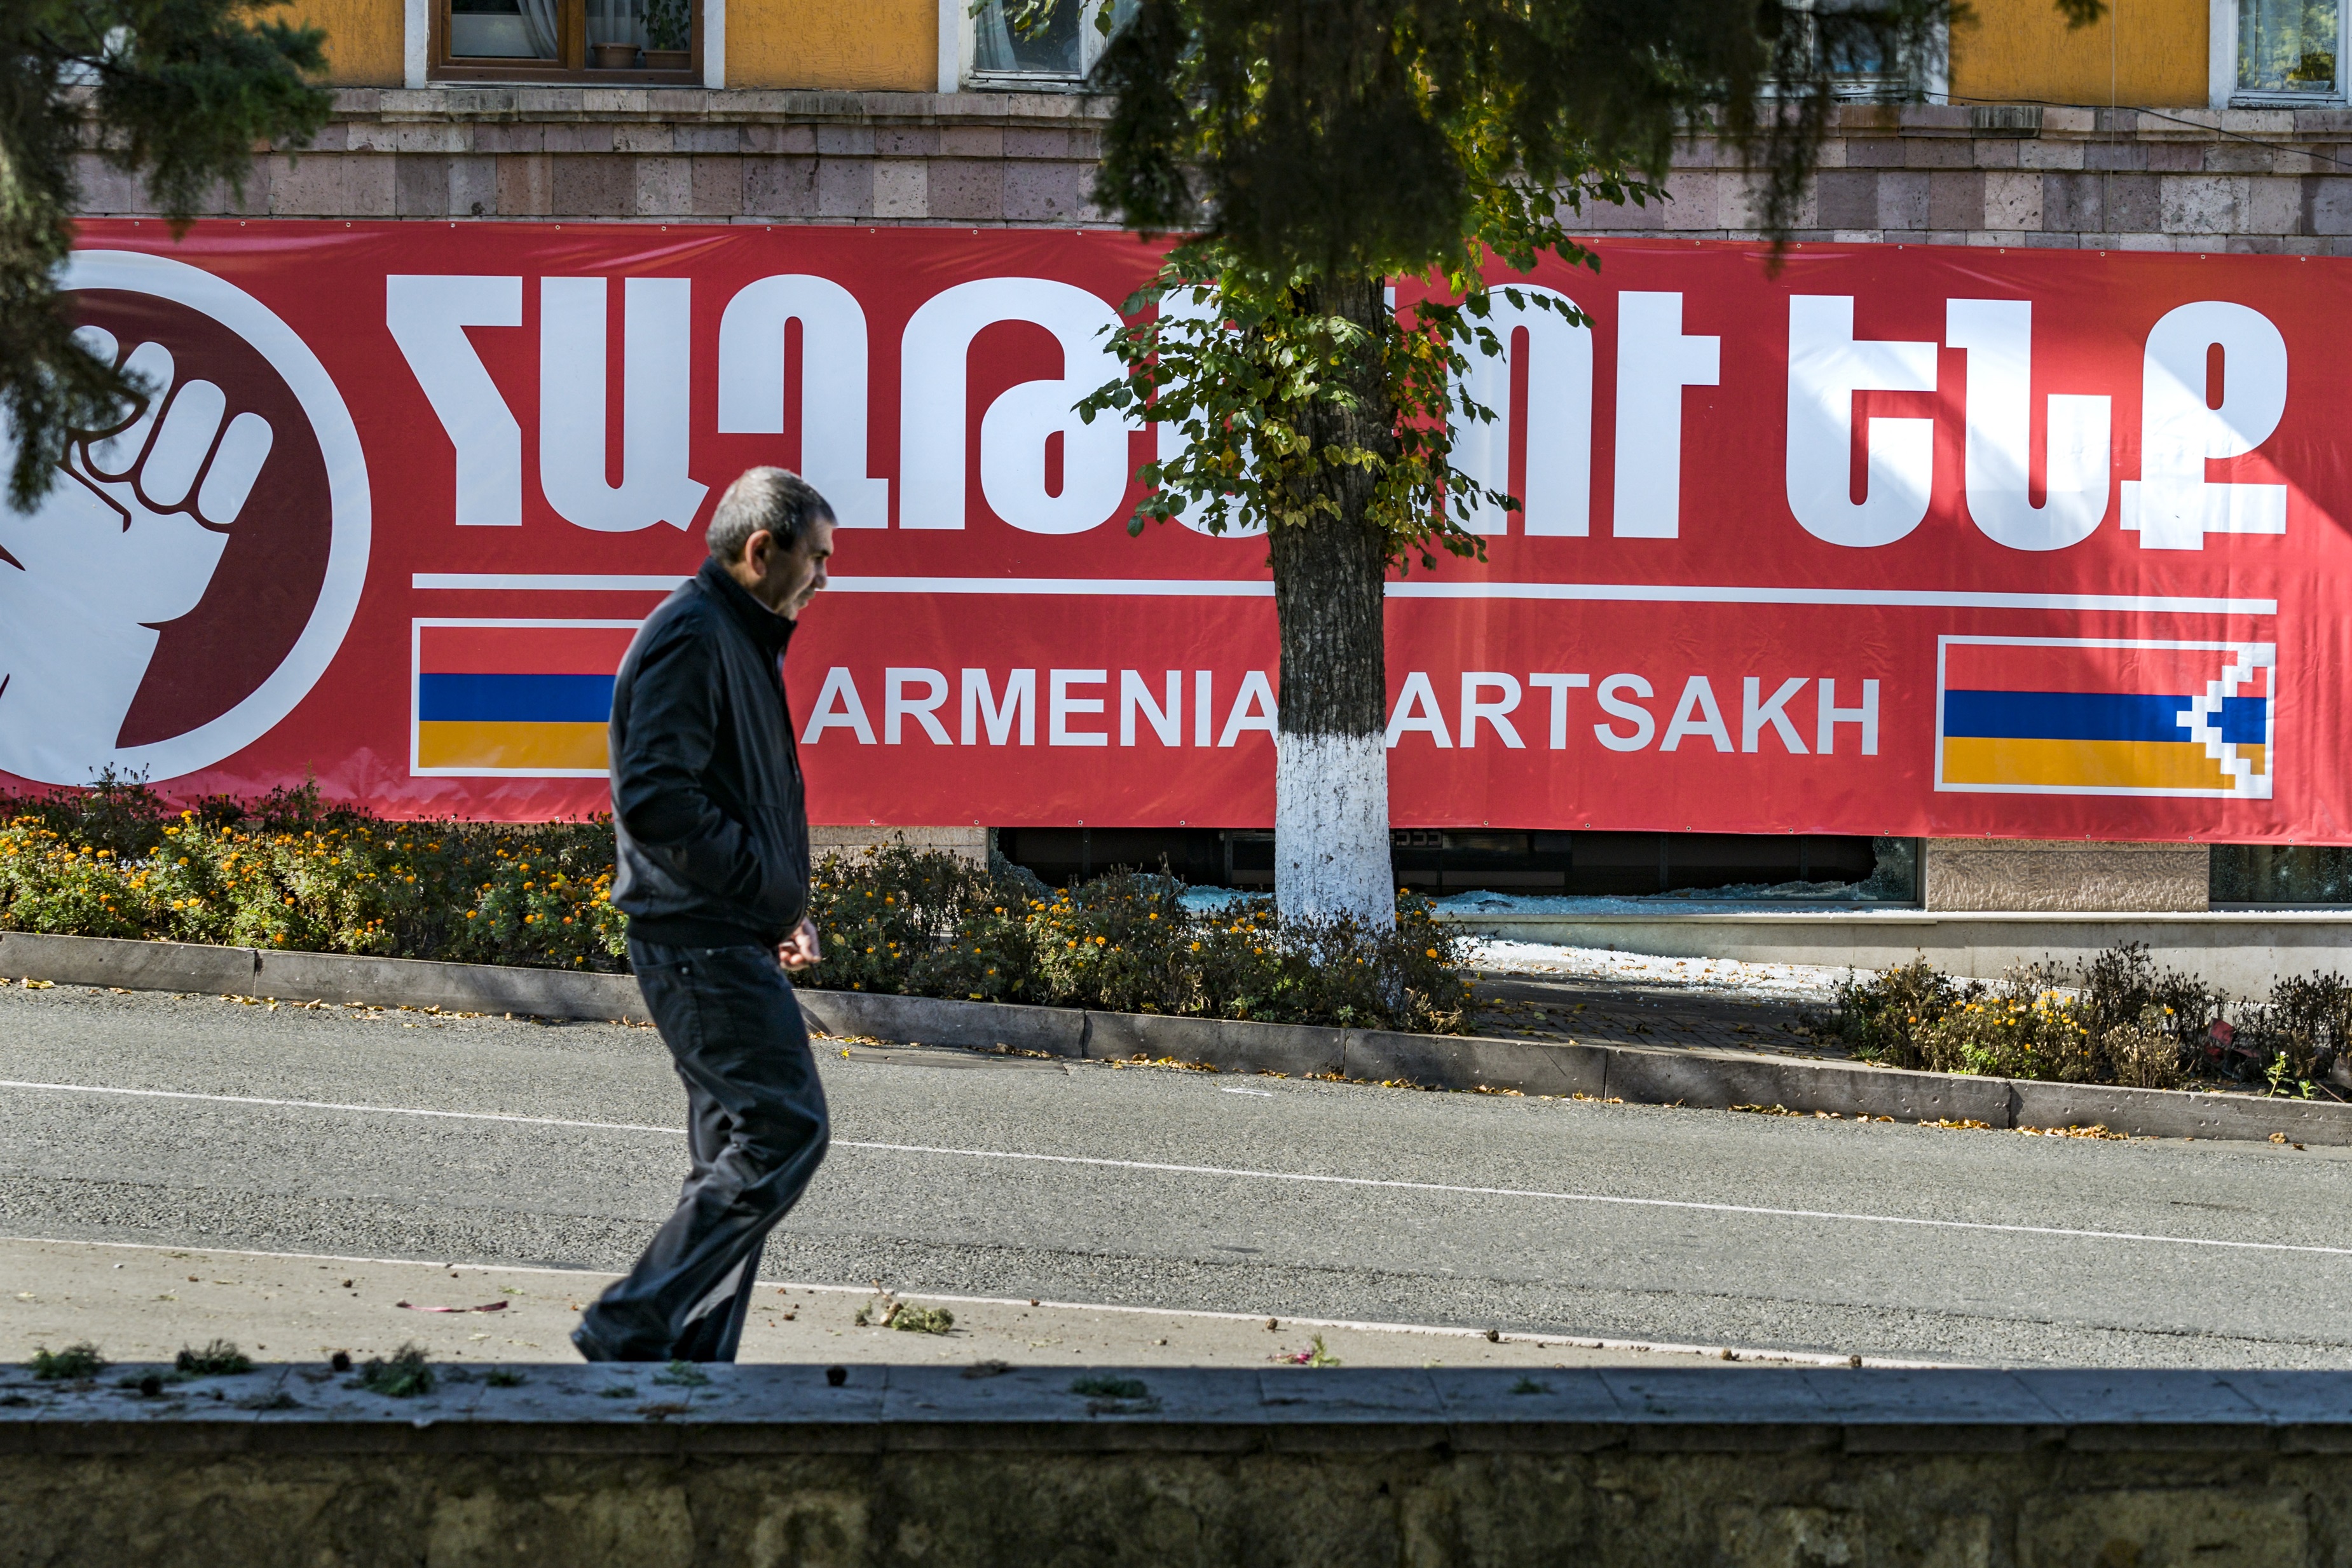 Un hombre camina por una calle de Stepanakert, capital de Nagorno Karabaj (POLITICA ARMENIA AZERBAIYÁN INTERNACIONAL
CELESTINO ARCE LAVIN / ZUMA PRESS)